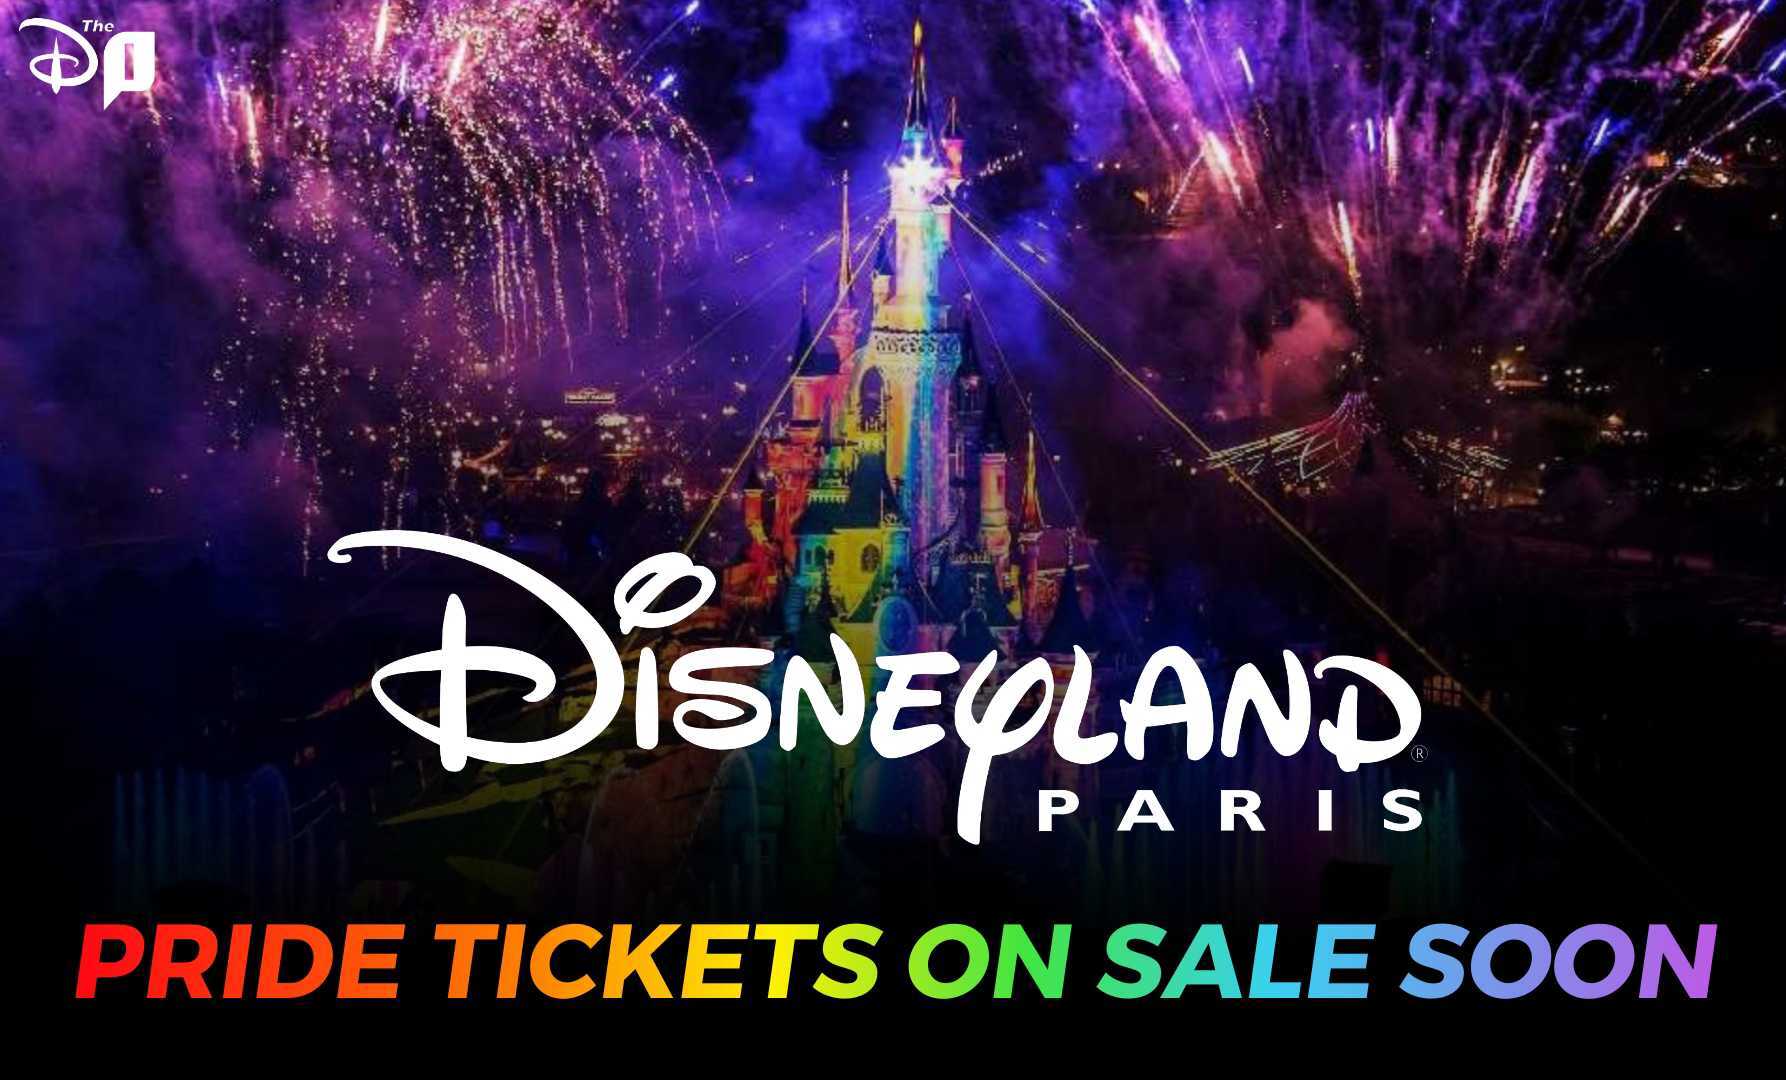 Disneyland Paris Pride Tickets on Sale Soon!